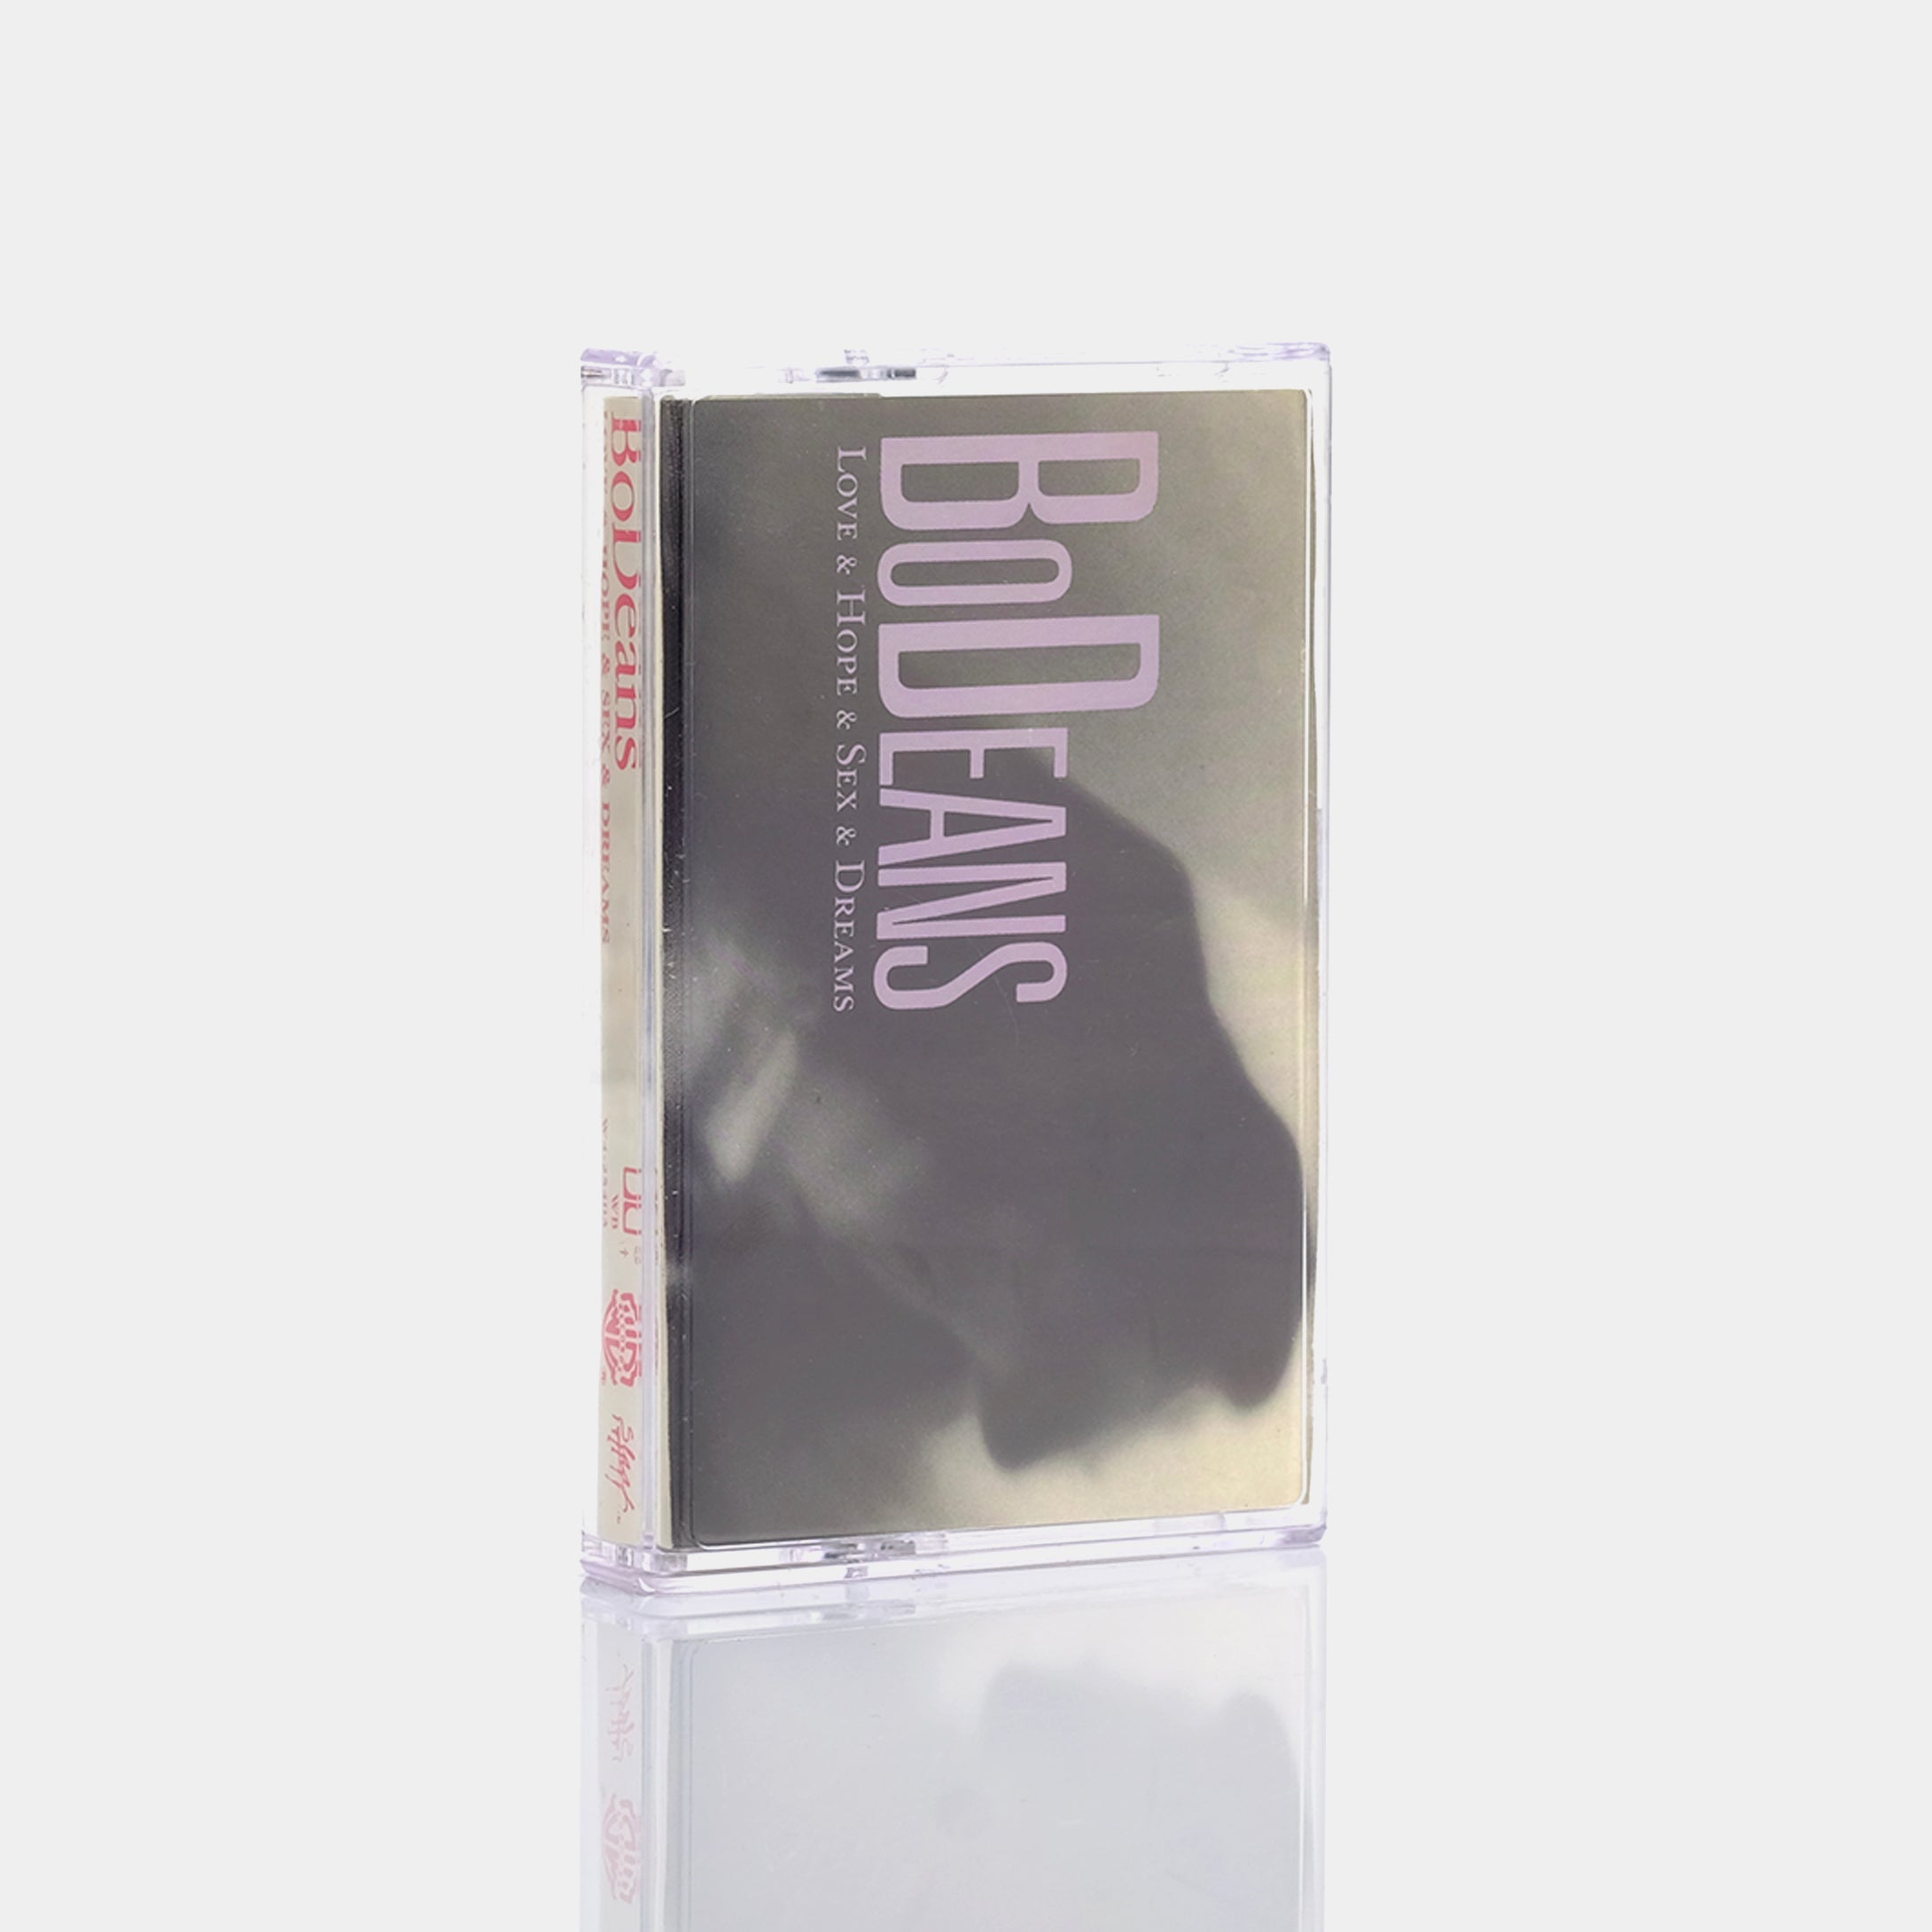 BoDeans - Love & Hope & Sex & Dreams Cassette Tape